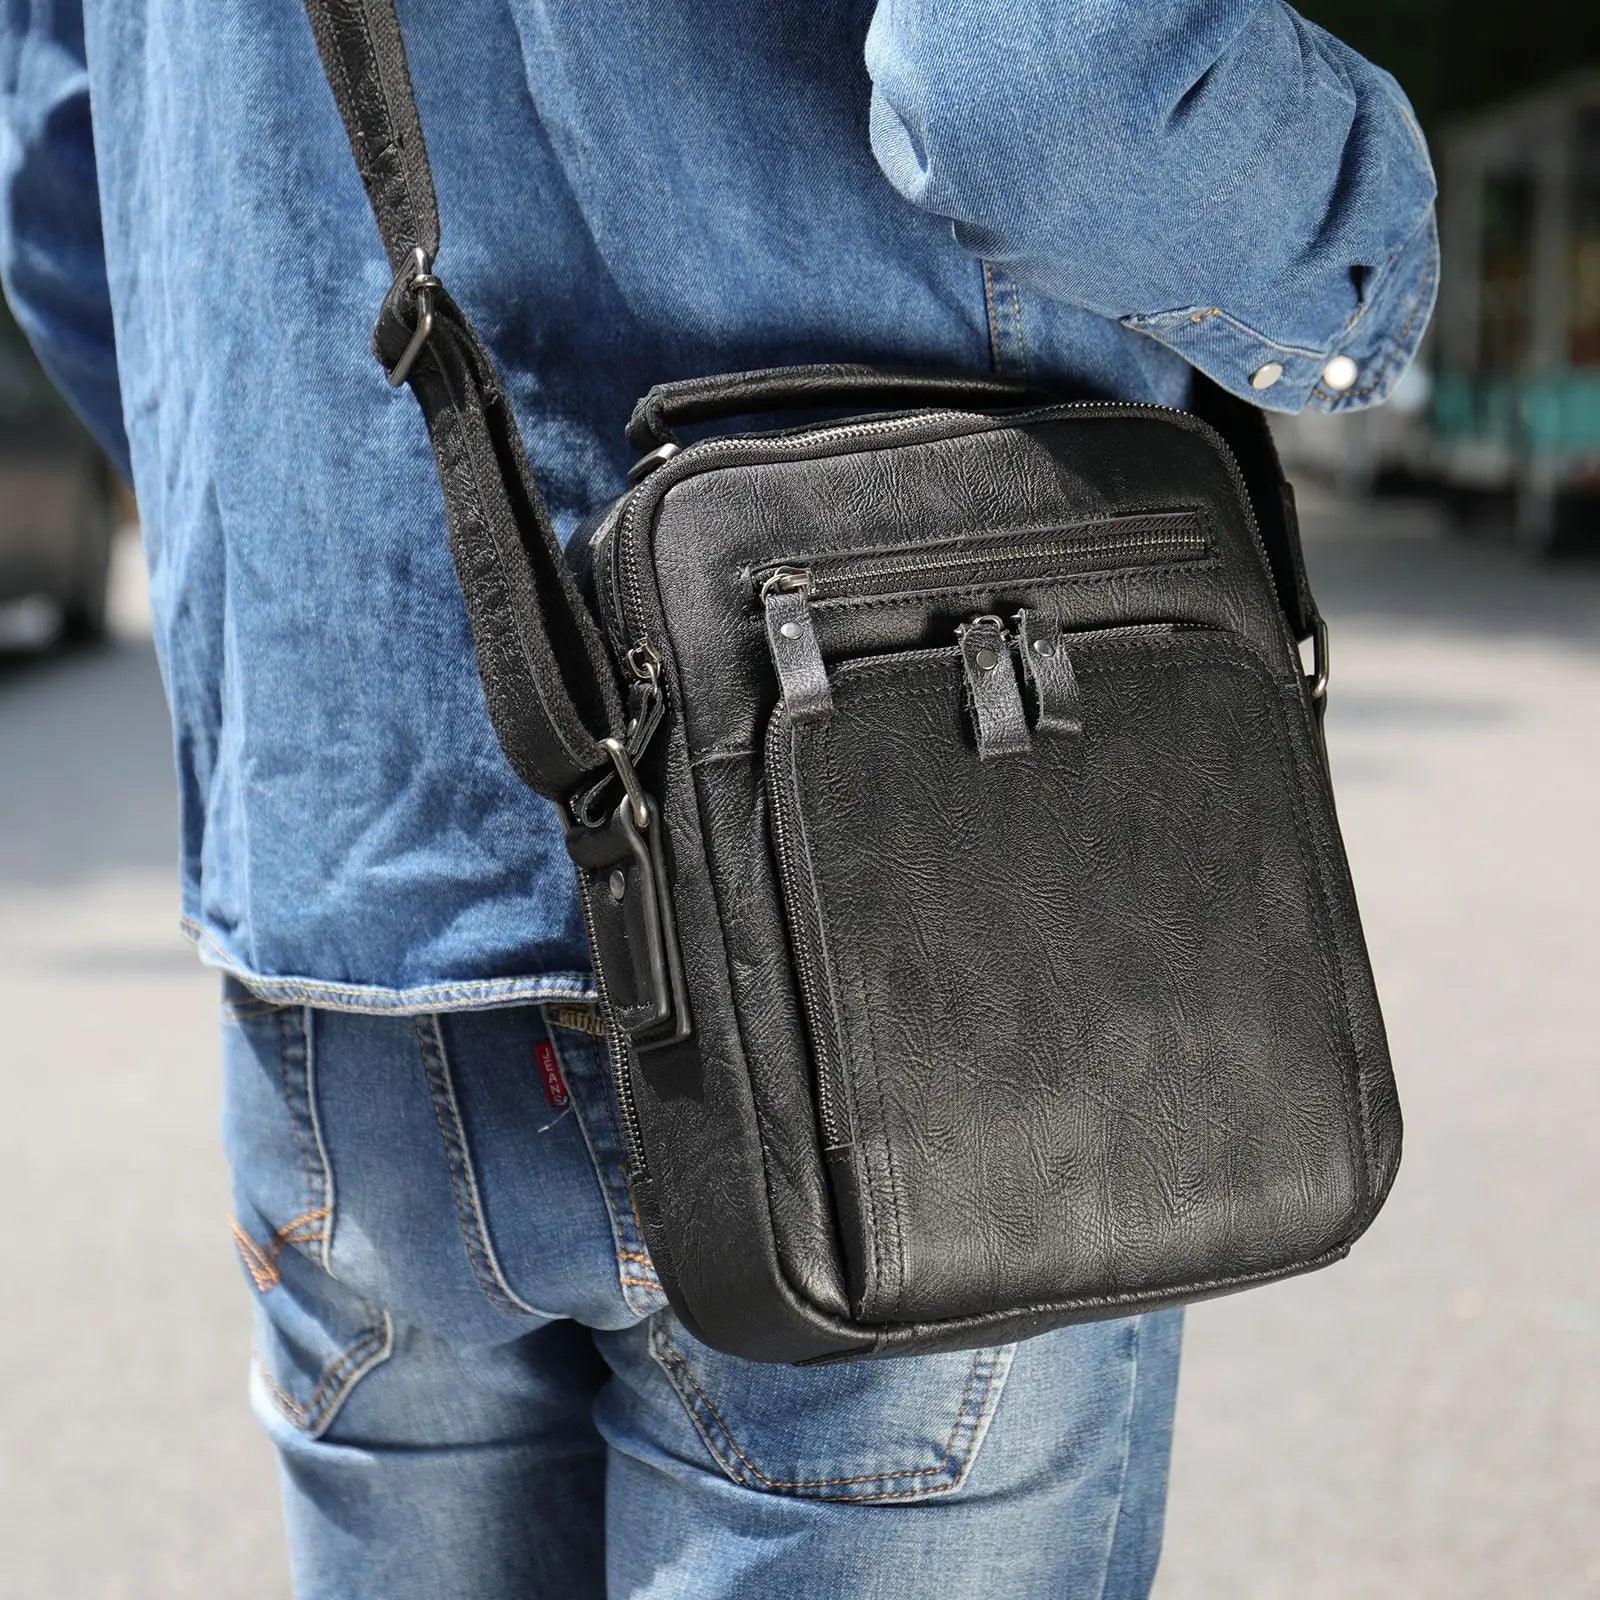 Luggage & Bags - Shoulder/Messenger Bags Retro Style Leather Shoulder Bag Mens Crossbody Bags Messenger Bag